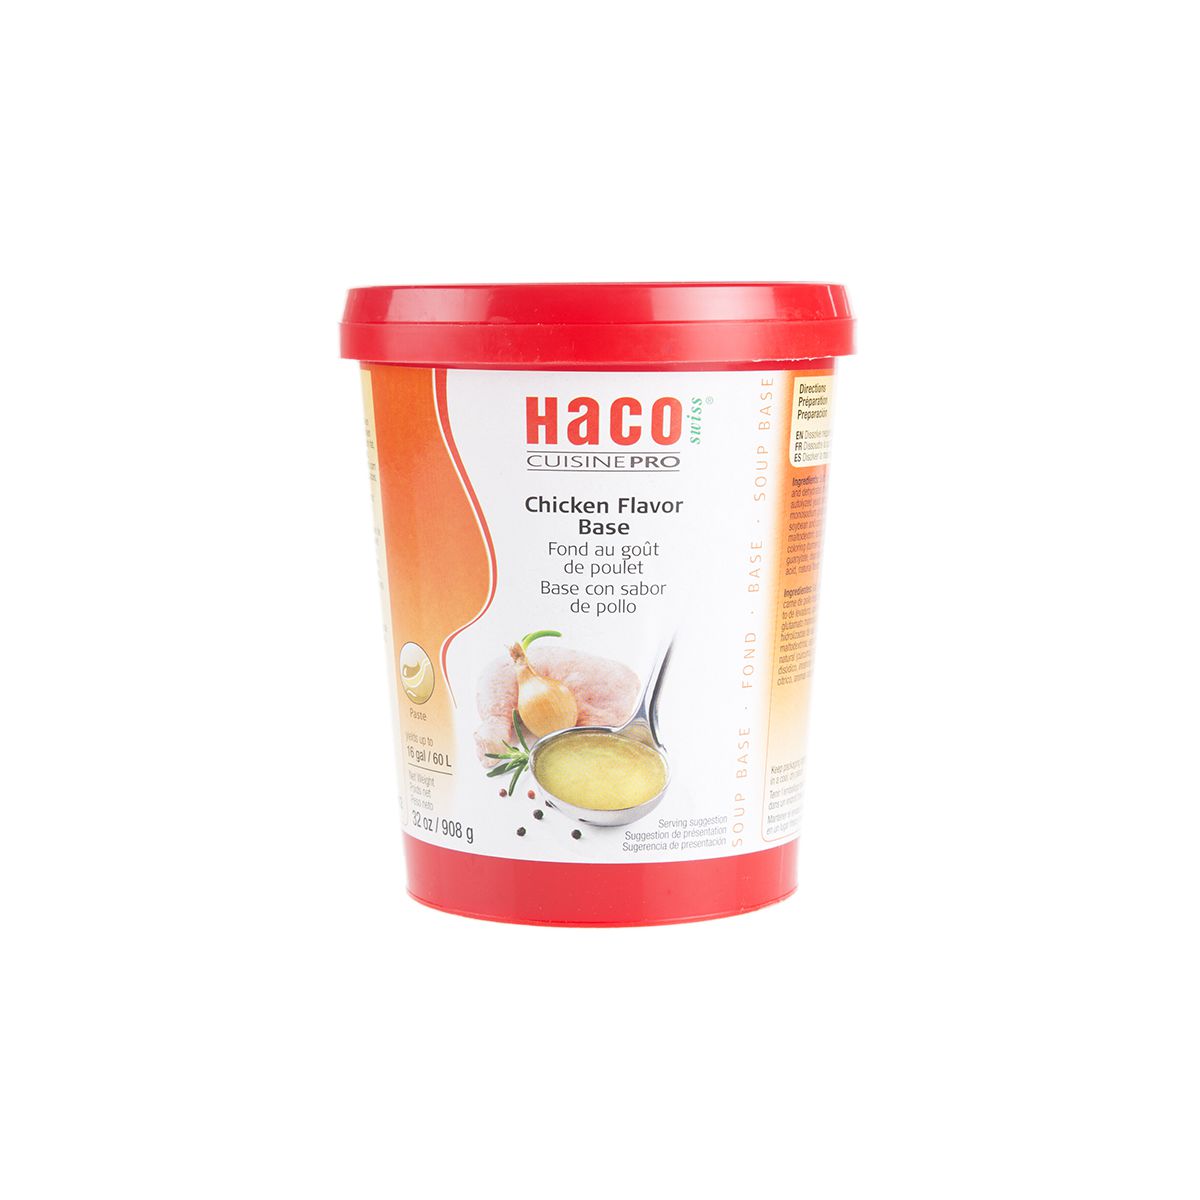 Haco Chicken Flavor Base Paste